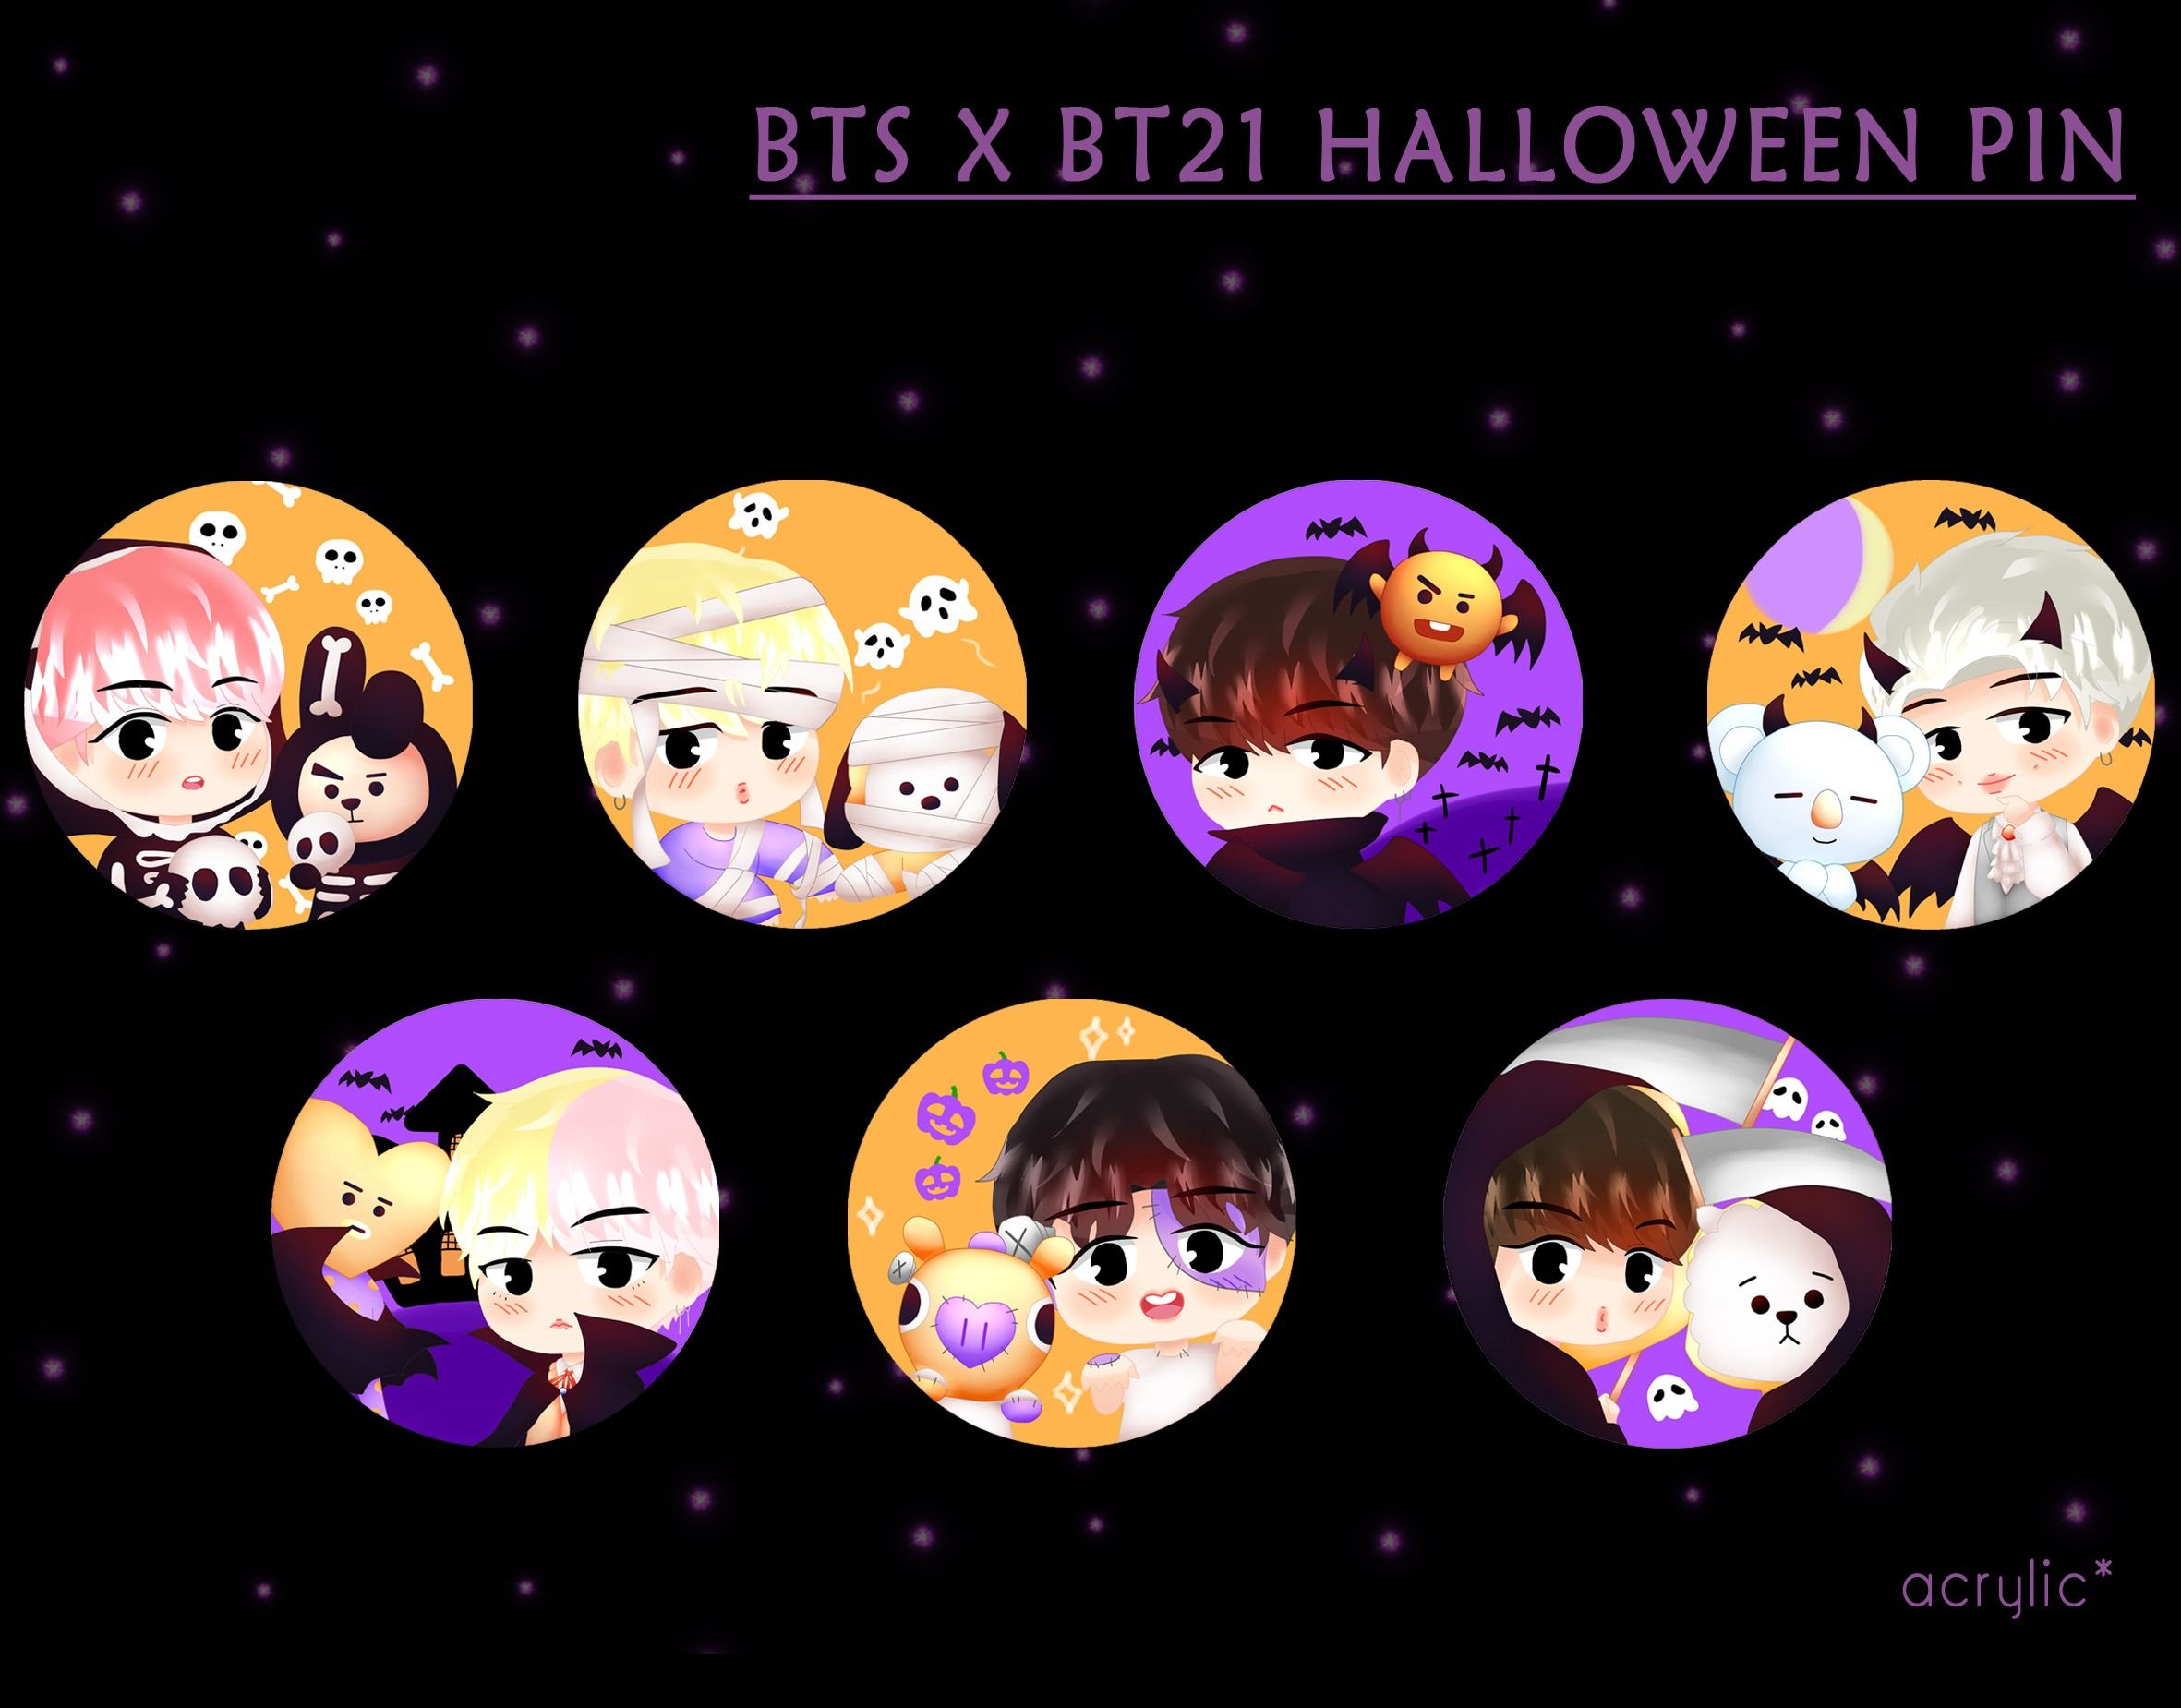 BTS x BT21 Halloween PIN